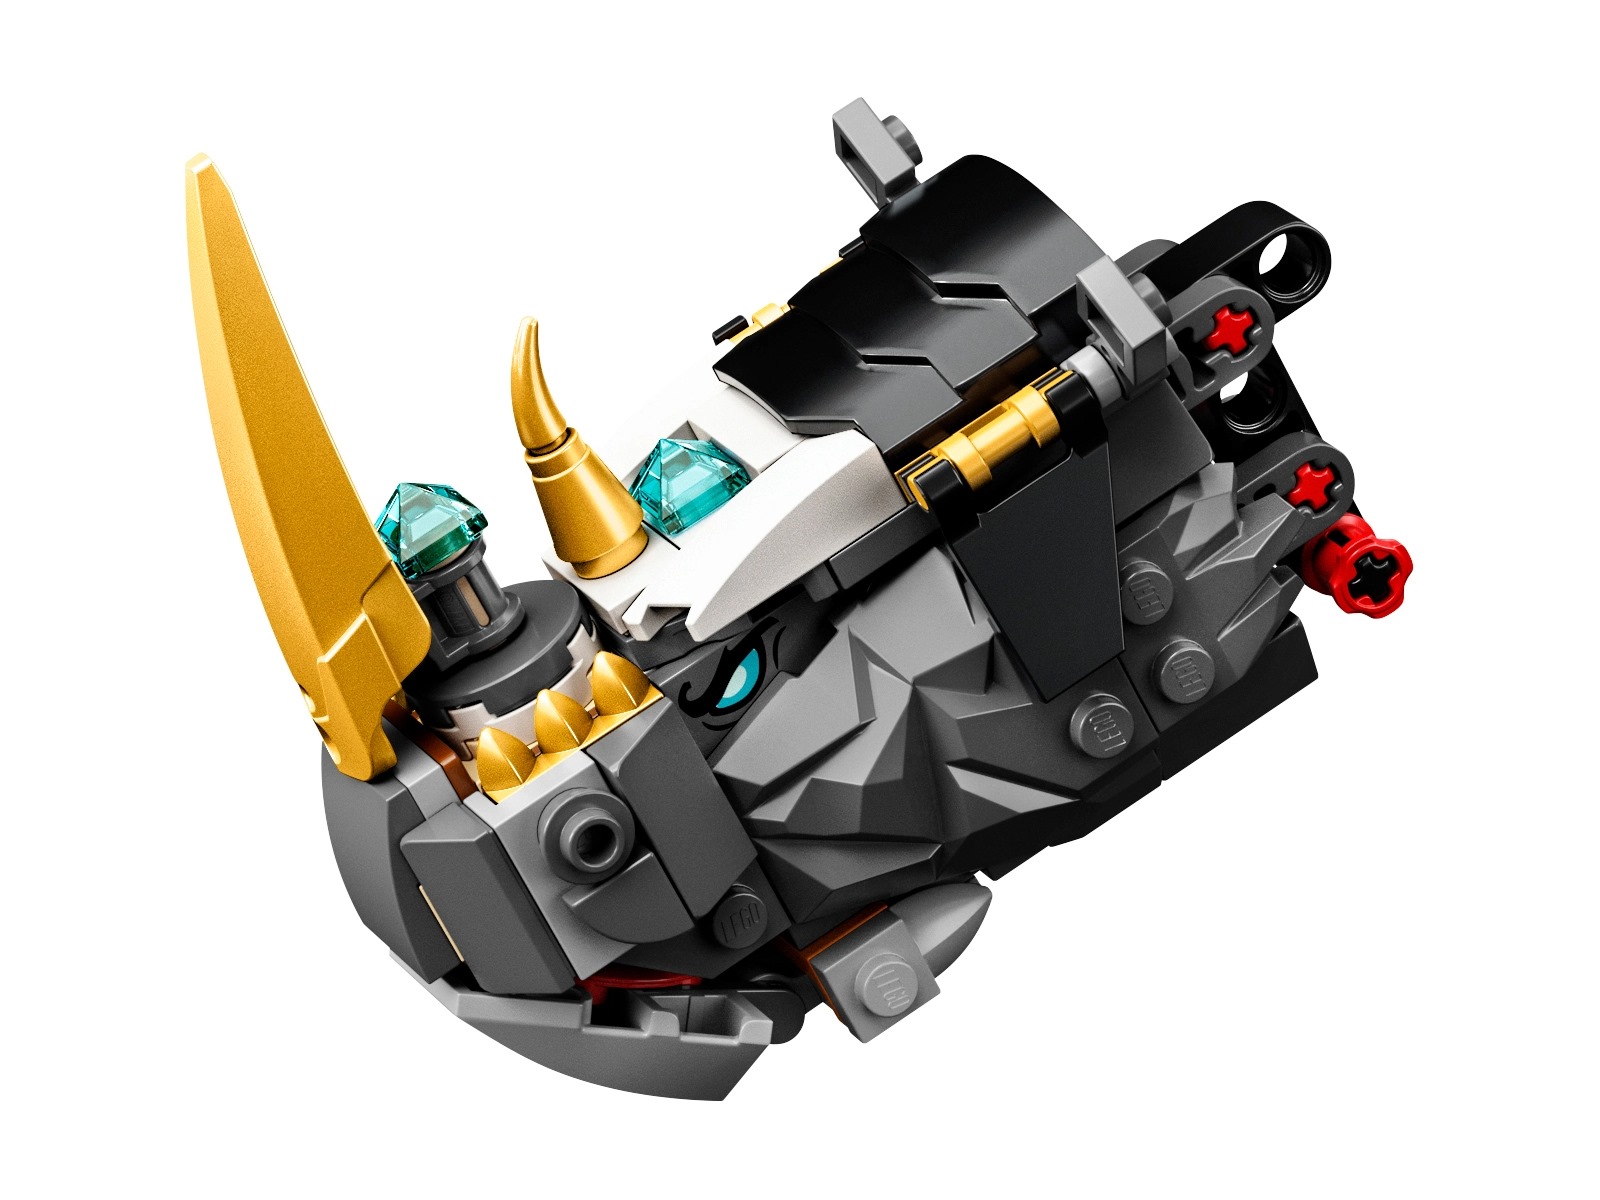 Конструктор LEGO NINJAGO 71719 «Бронированный носорог Зейна» 616 деталей